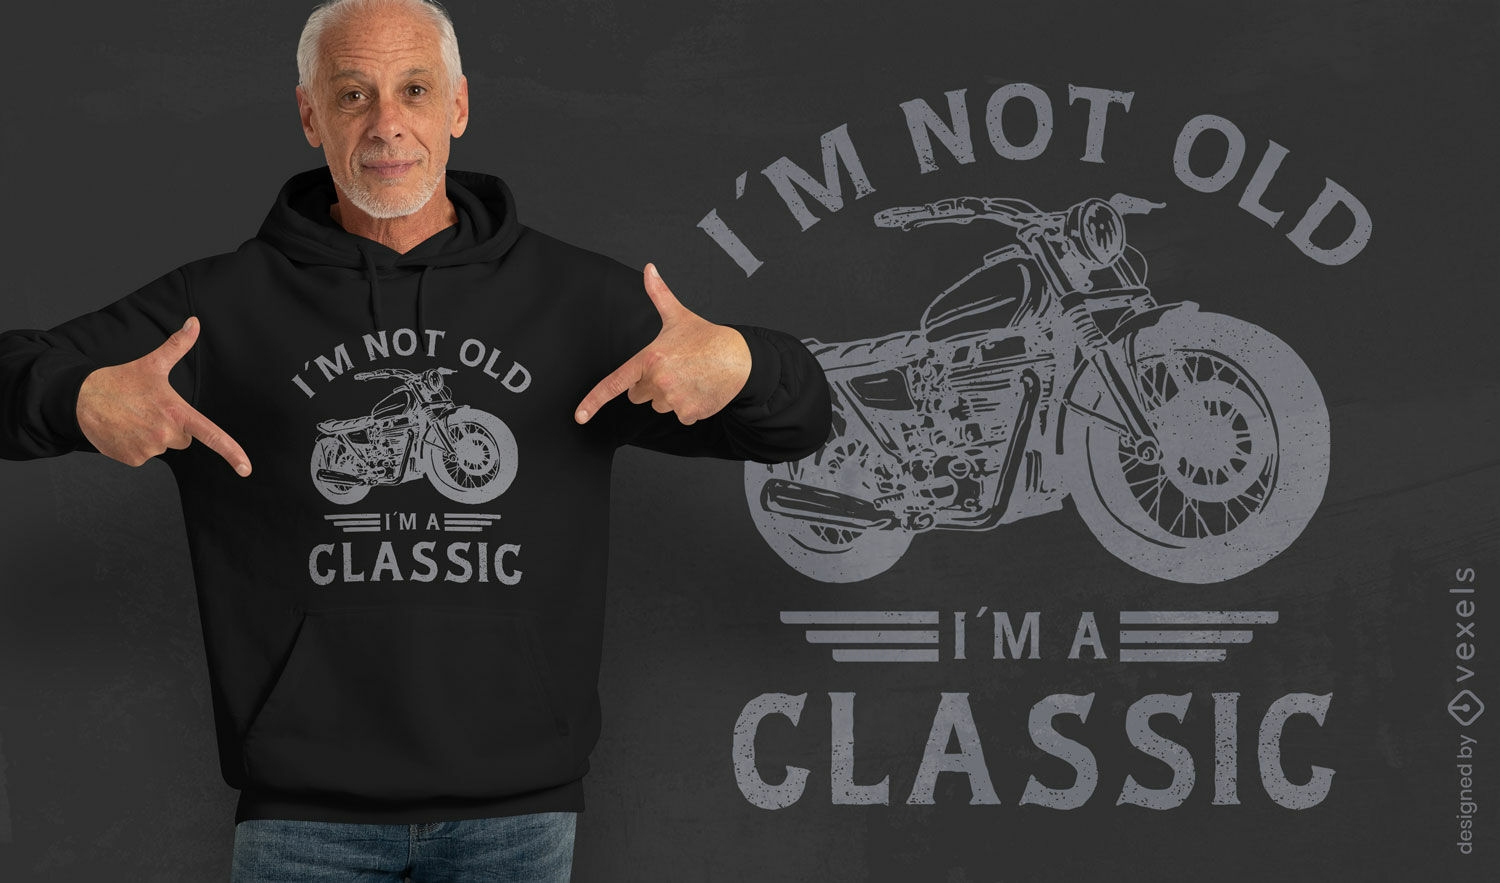 Diseño clásico de camiseta de moto vintage.